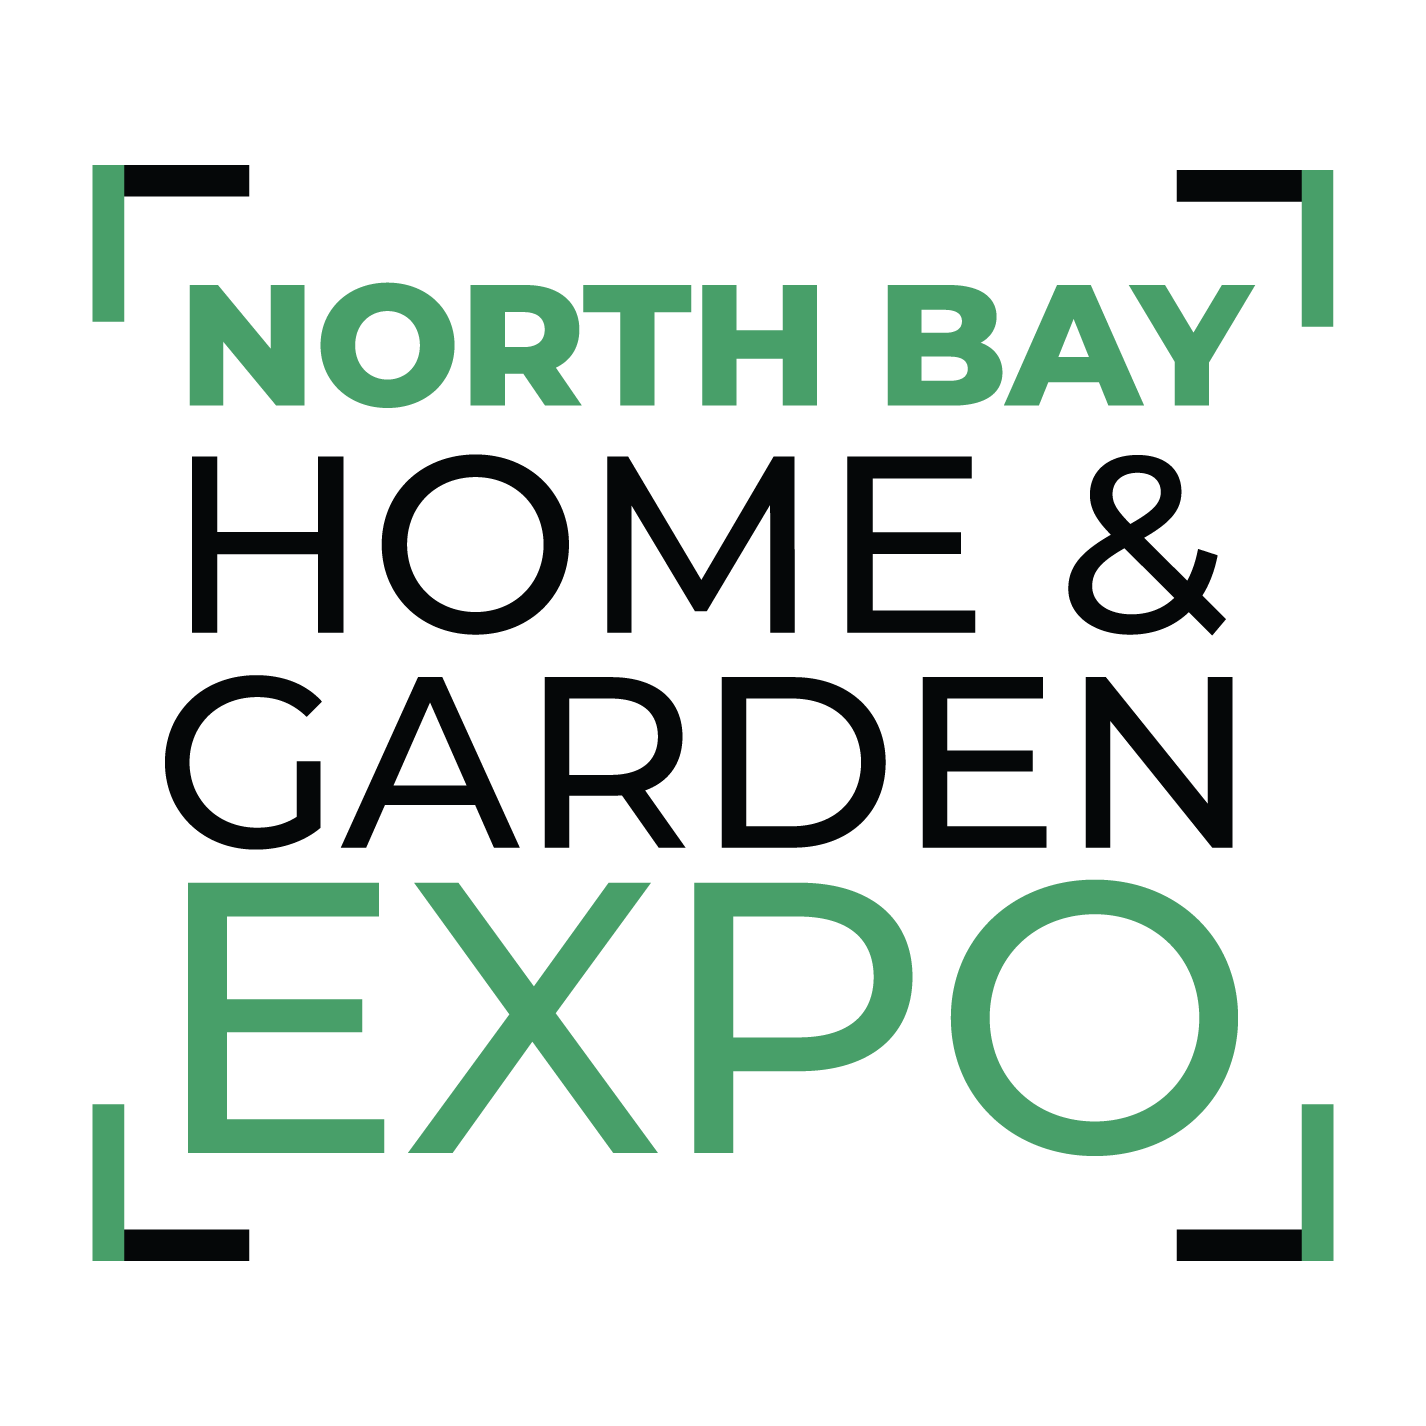 North Bay - Home & Garden Expo